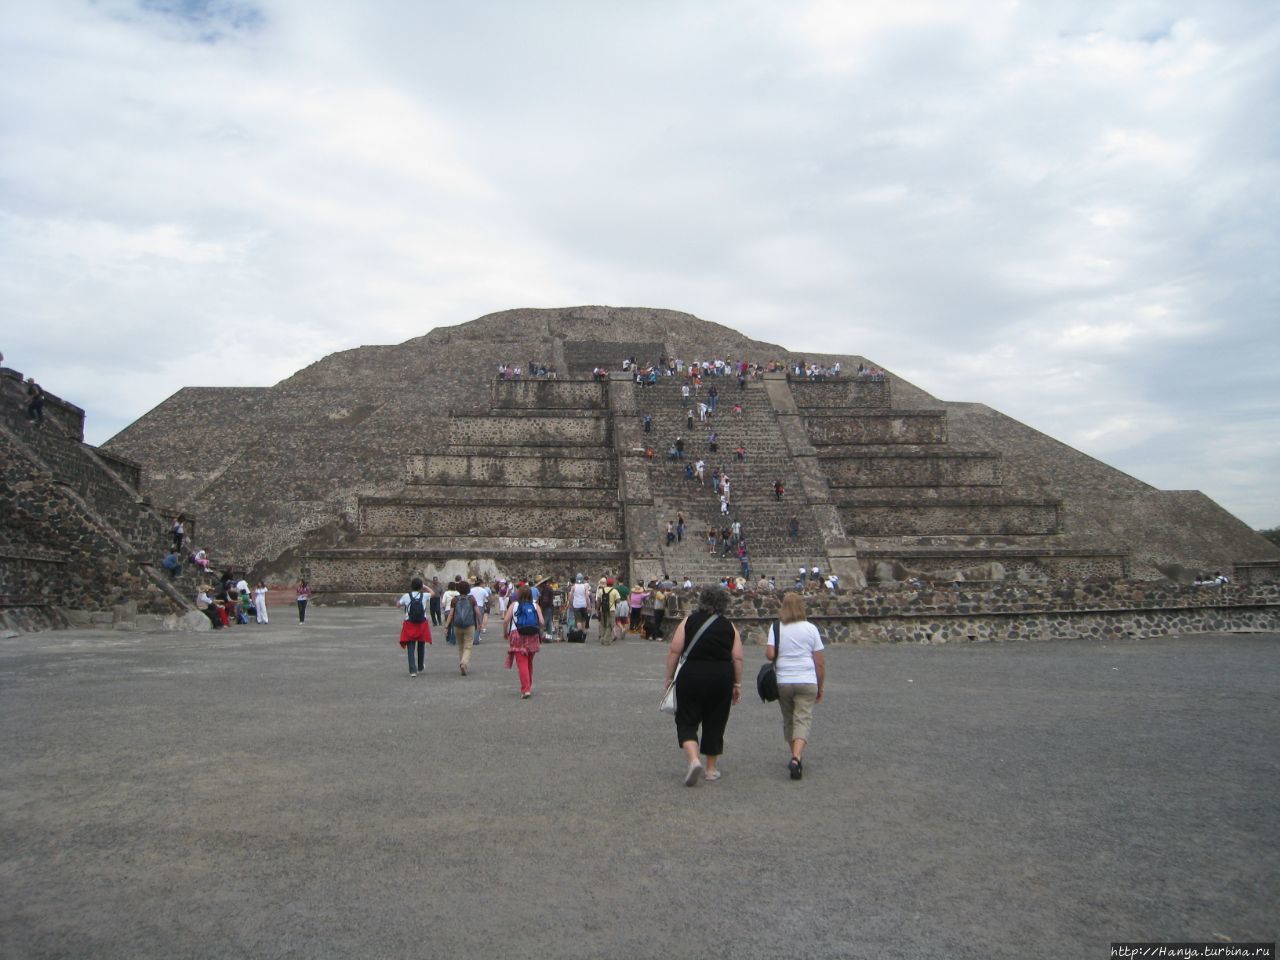 Пирамида Луны Теотиуакан пре-испанский город тольтеков, Мексика